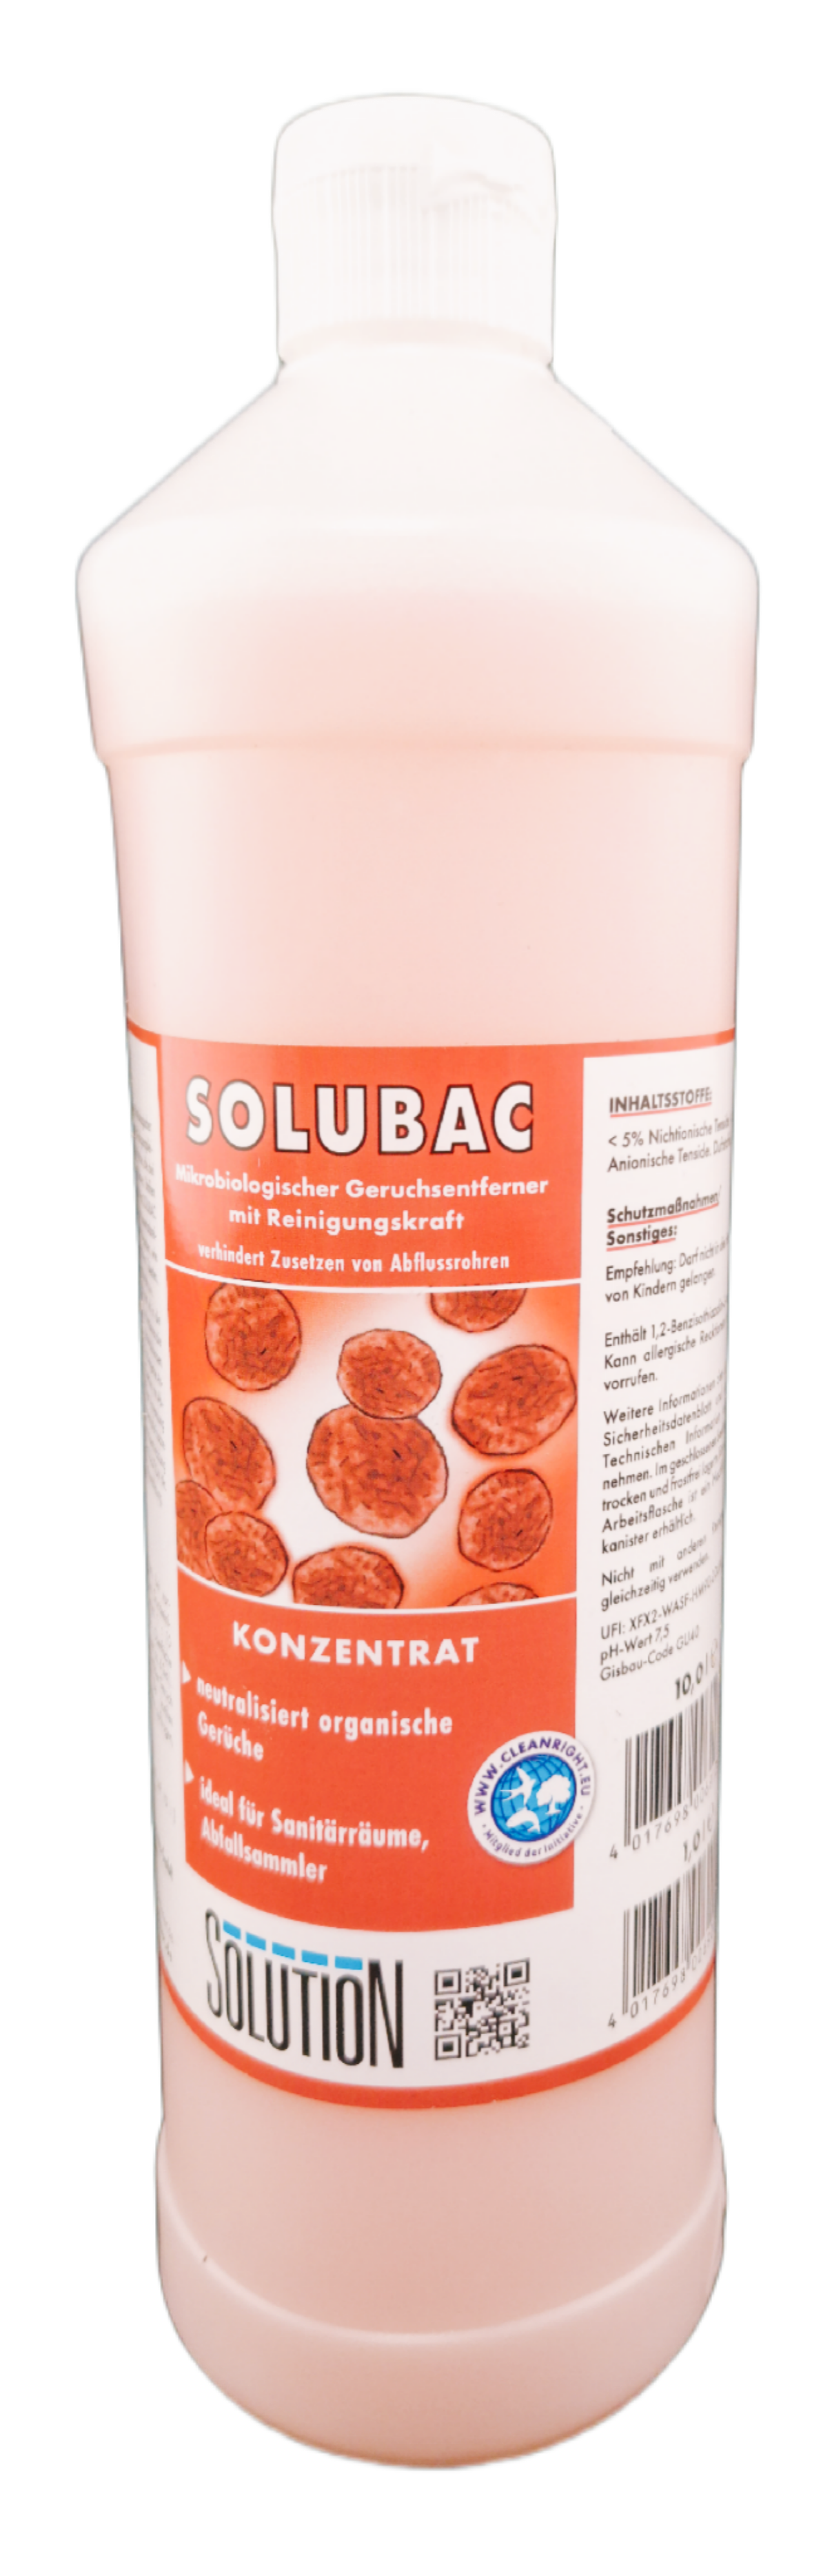 SOLUTION Glöckner - Solubac Geruchsvernichter 1 L Flasche